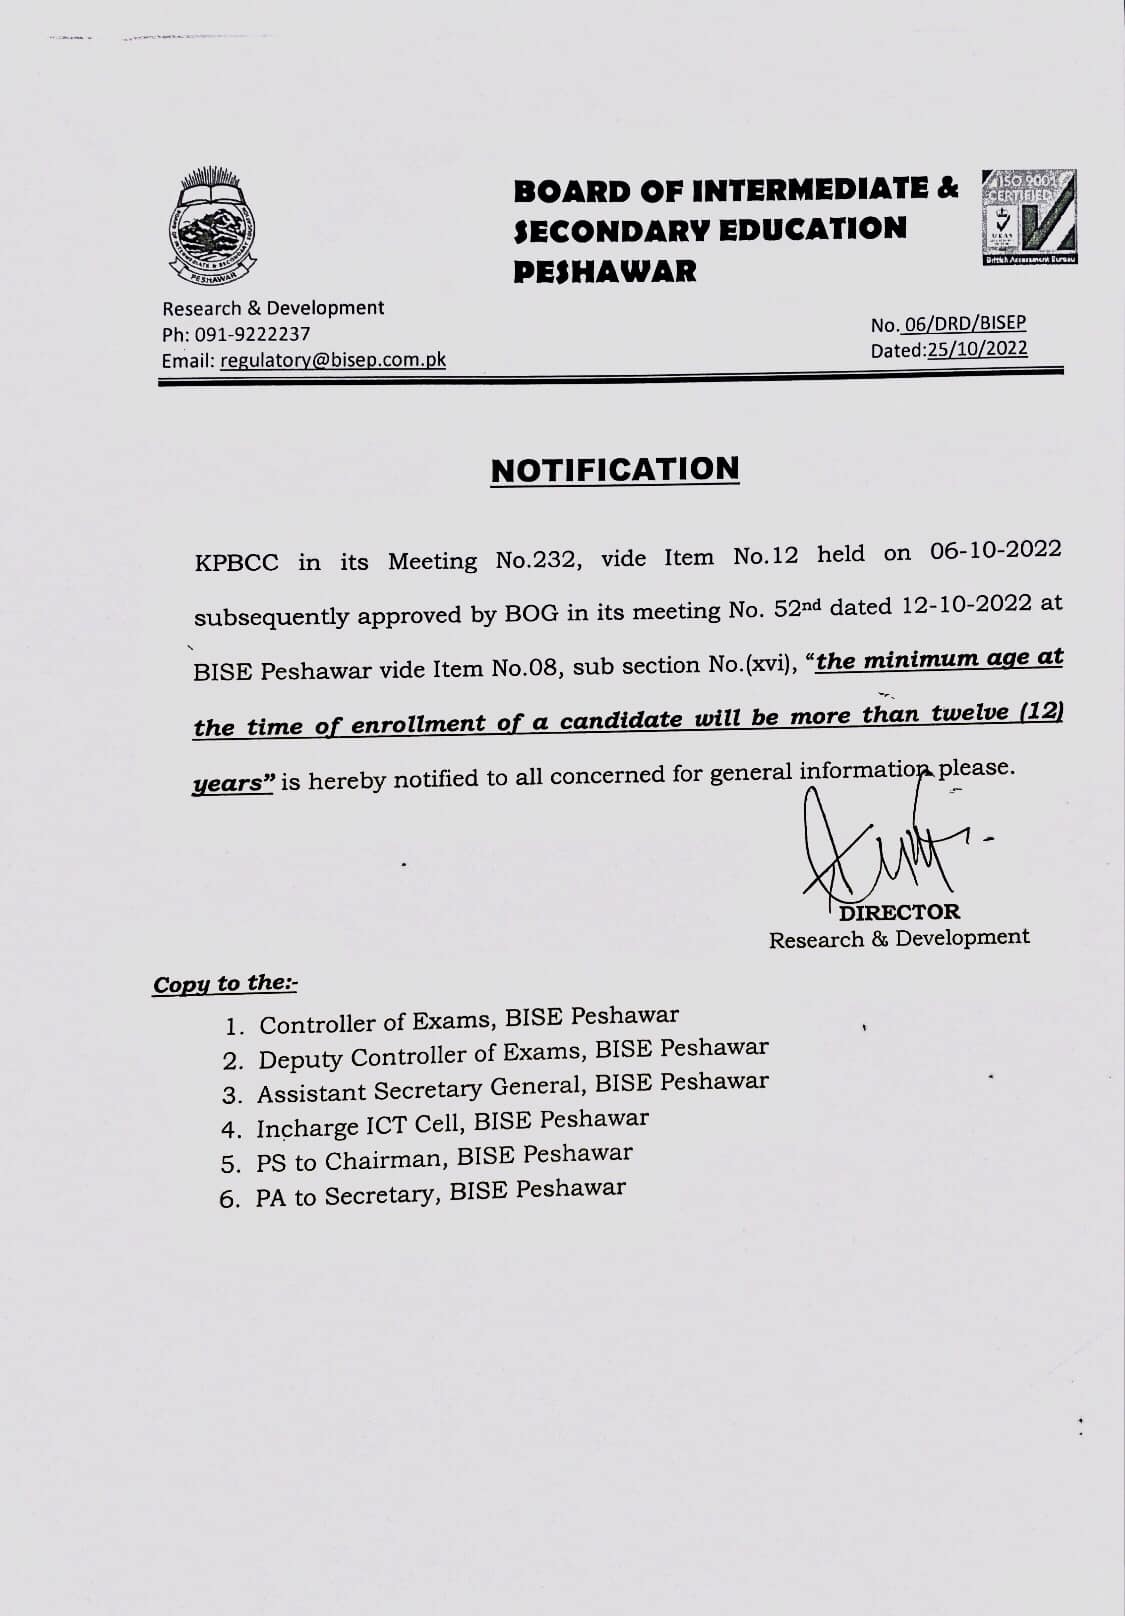 Revised Age Limit For Enrolment BISE Peshawar